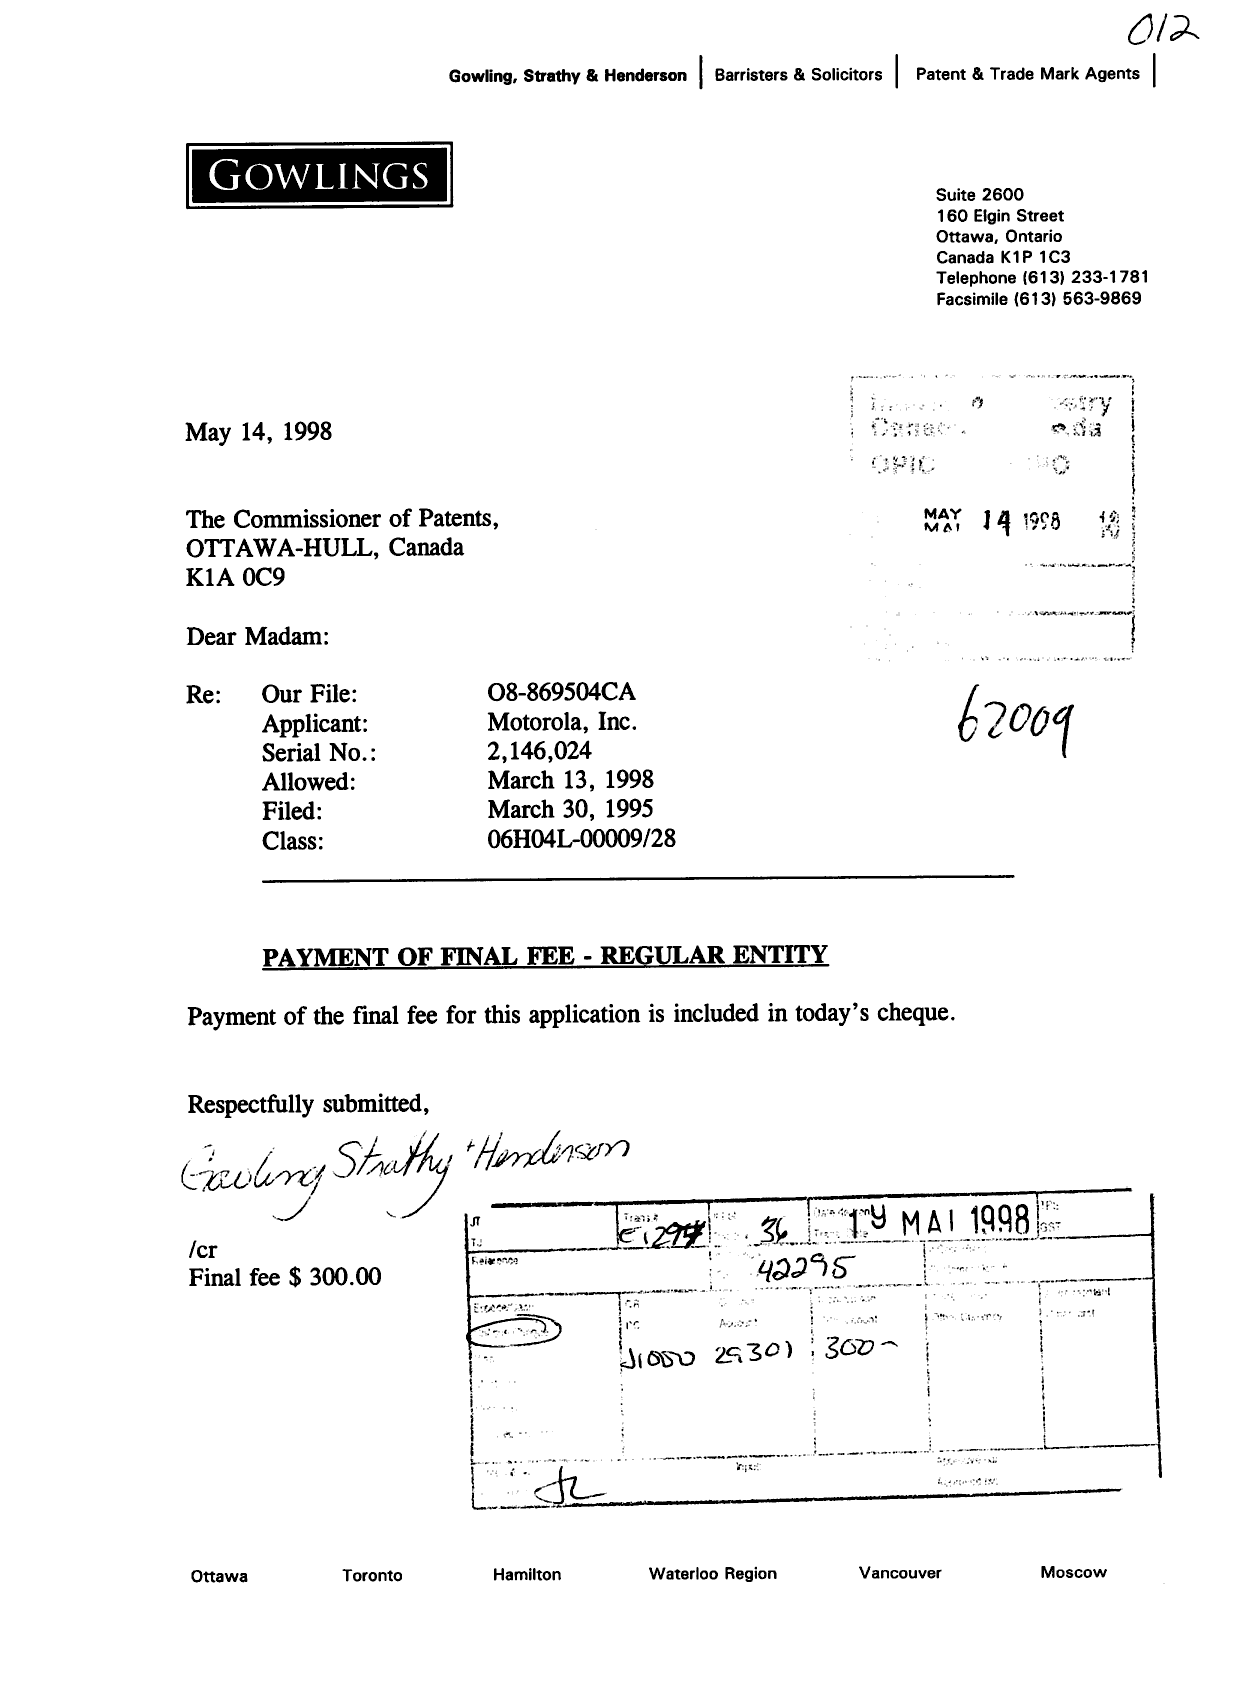 Document de brevet canadien 2146024. Correspondance 19980514. Image 1 de 1